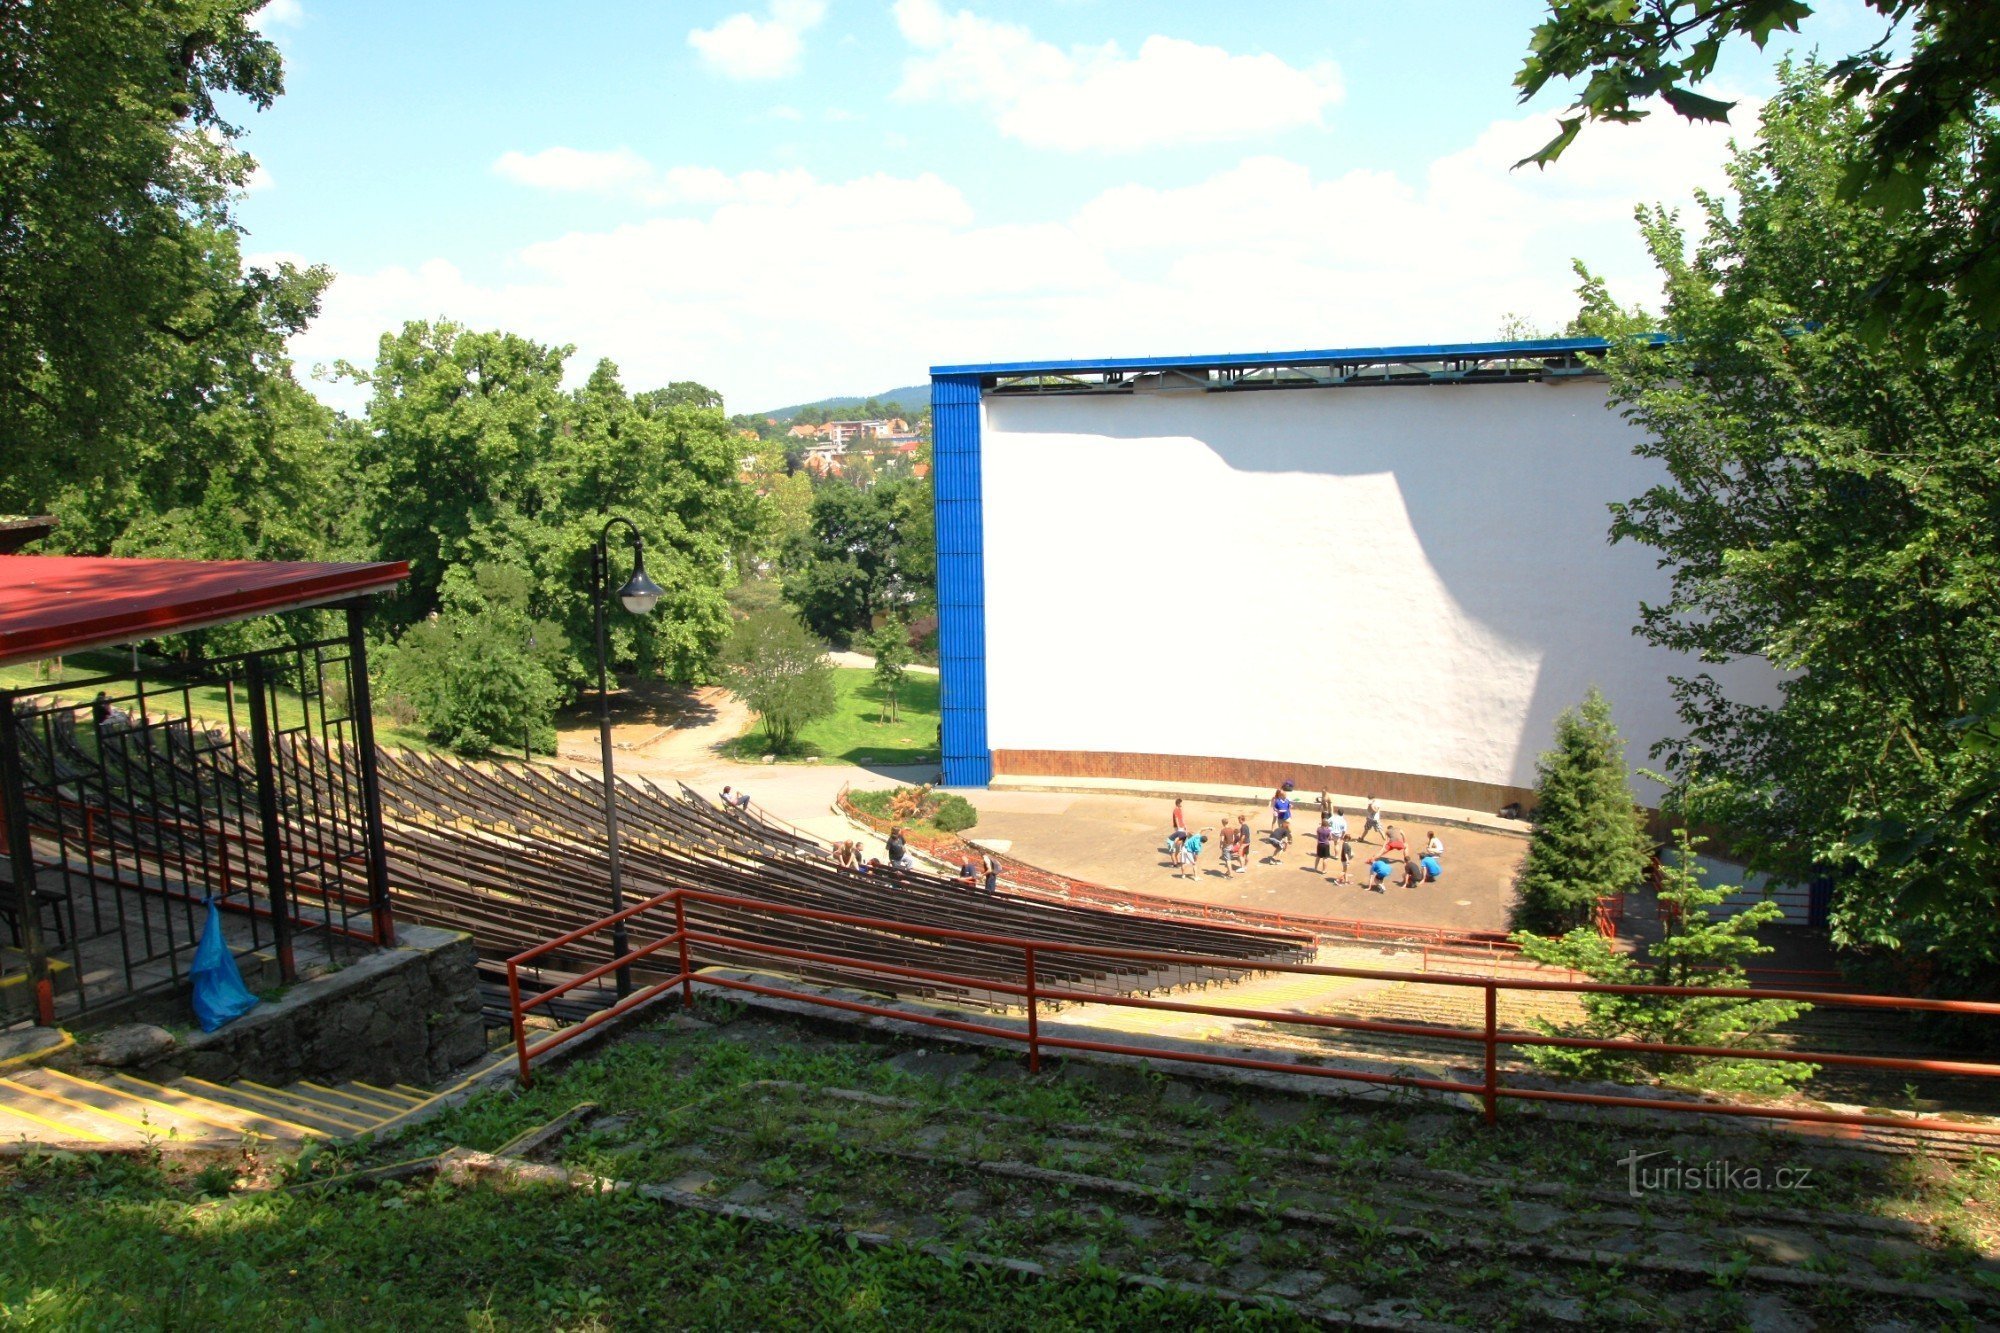 Kino letnie znajduje się w naturalnym amfiteatrze